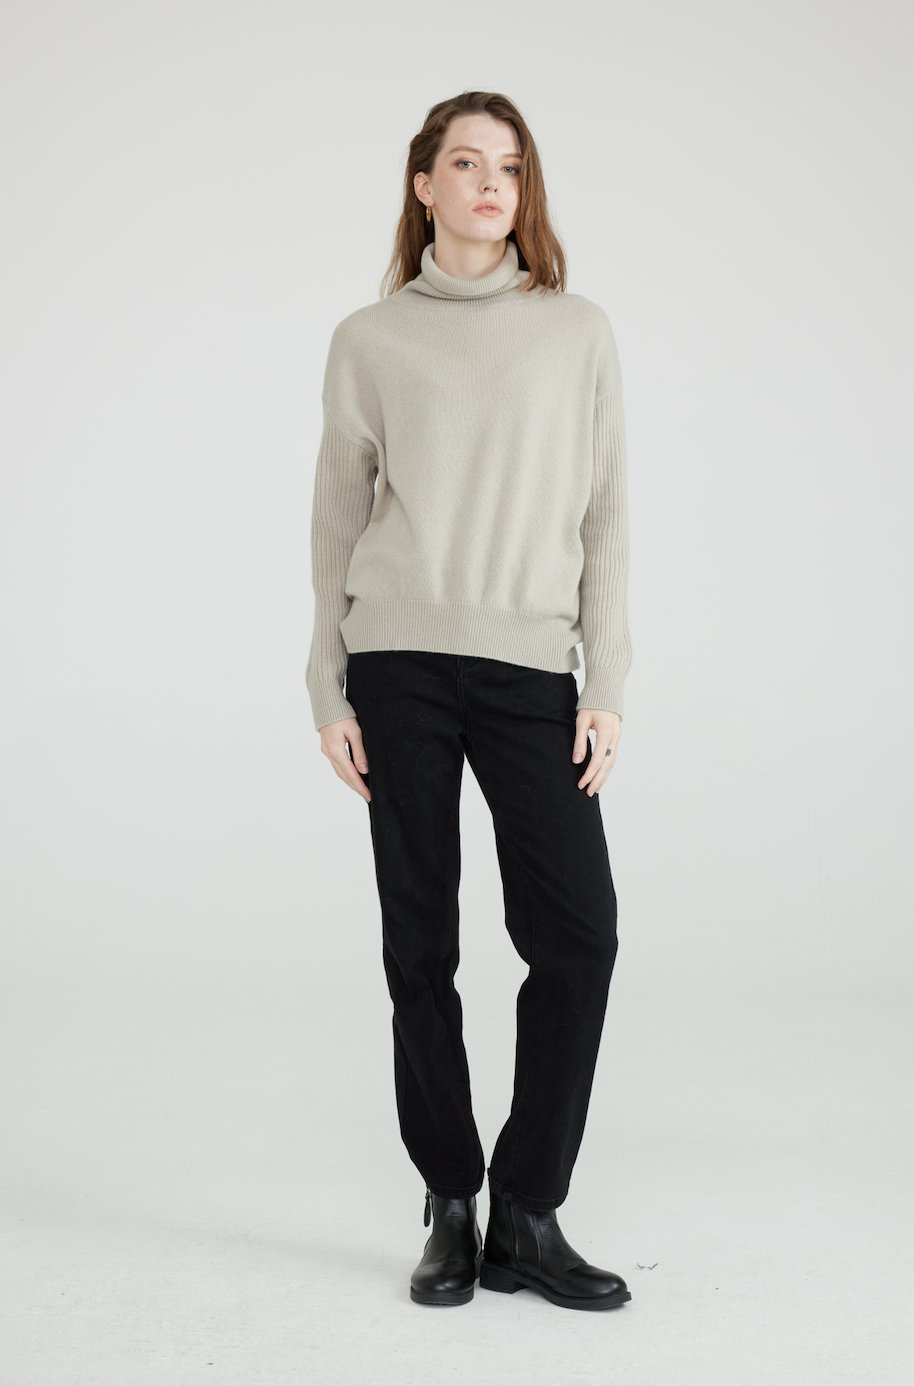 Mia 100% Wool Turtleneck Drop Shoulder Sweater - Whisper Mint